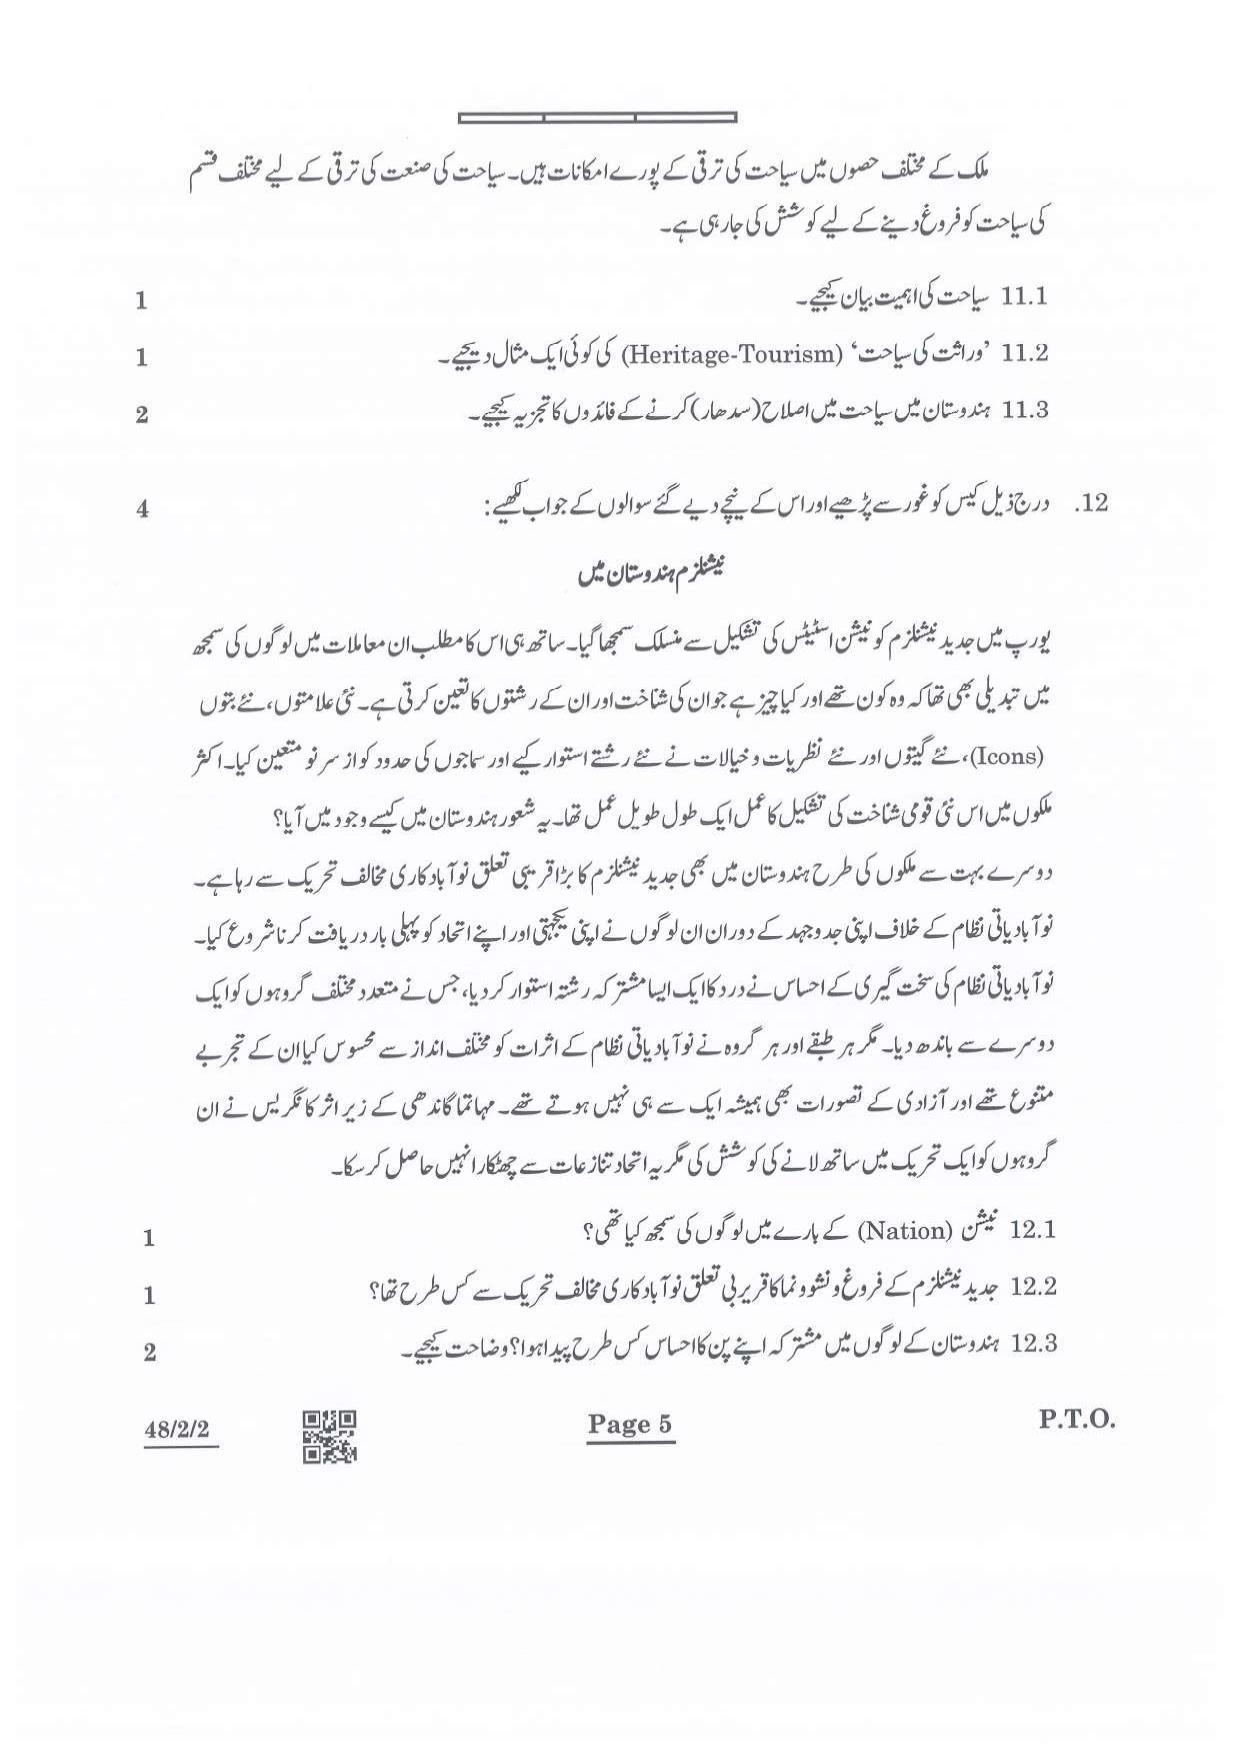 CBSE Class 10 48-2-2 Social Science Urdu Version 2022 Question Paper - Page 5